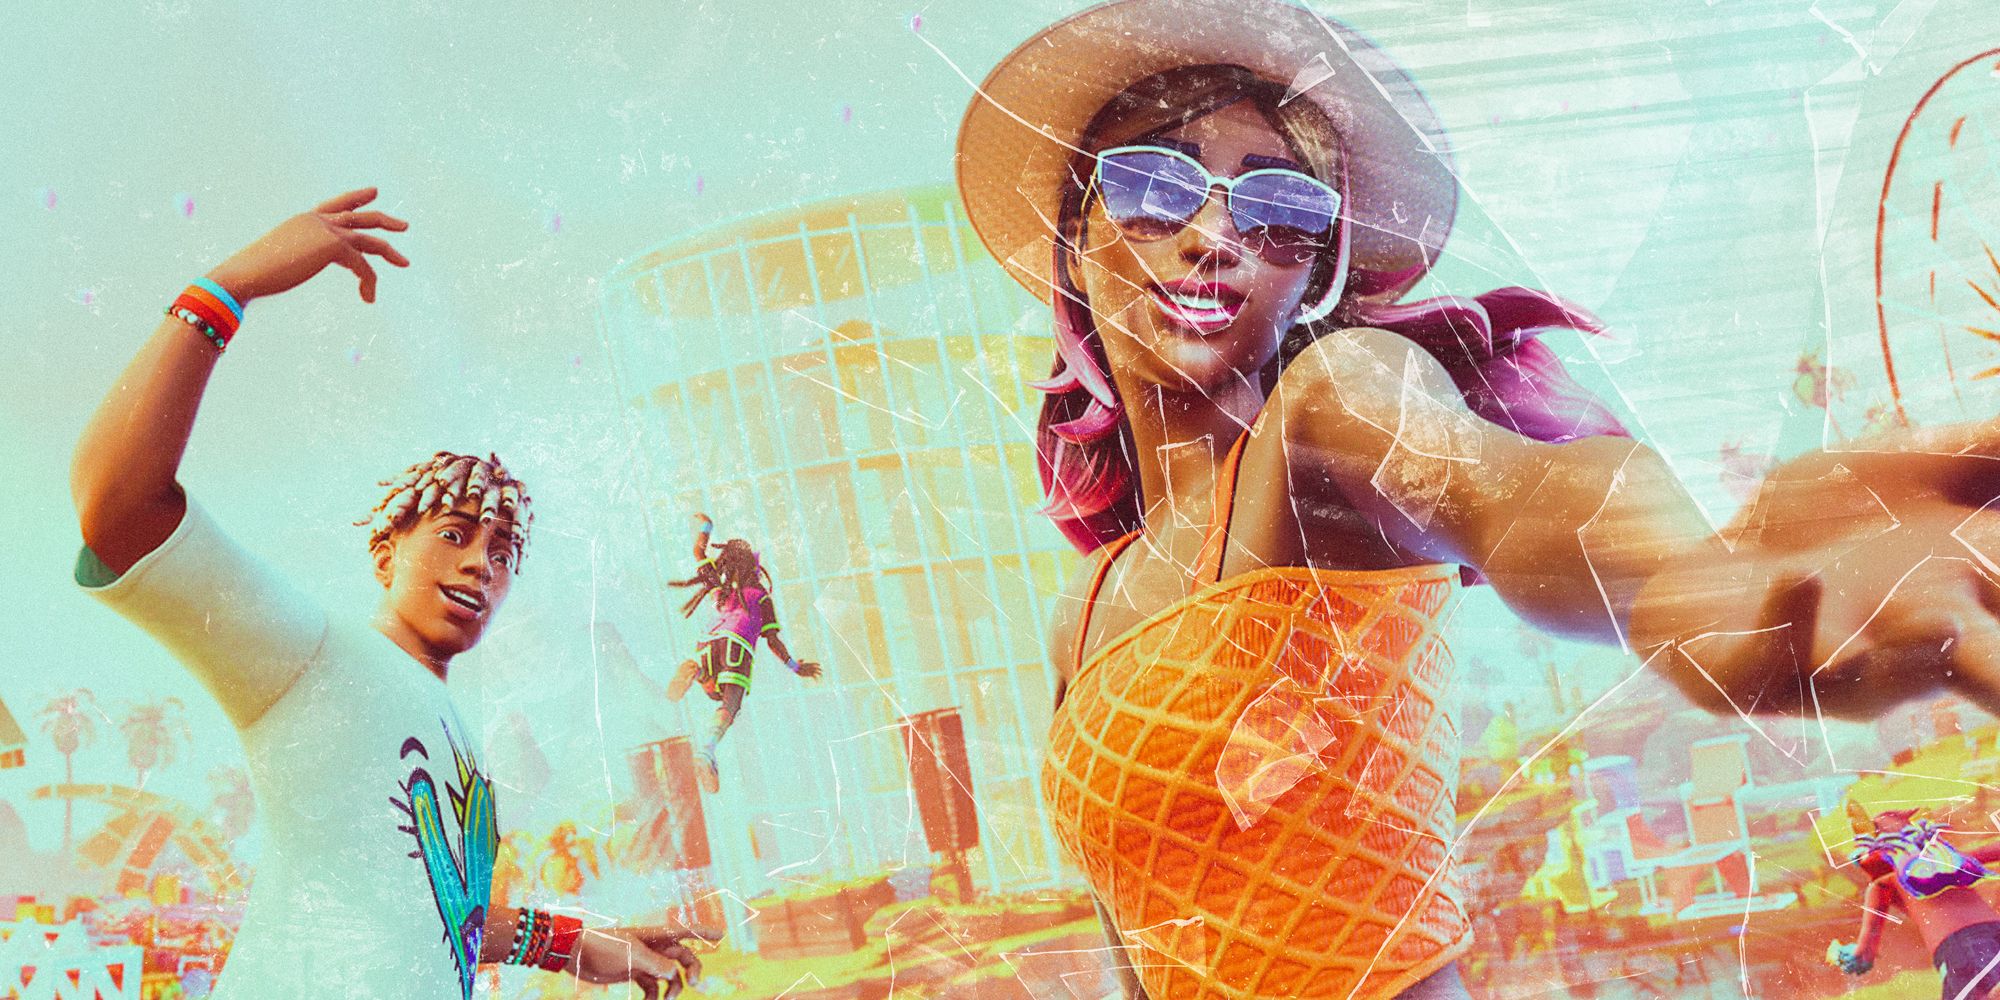 Coachella retorna ao Fortnite com Ilha e skins novas - Tecnologia e Games -  Folha PE